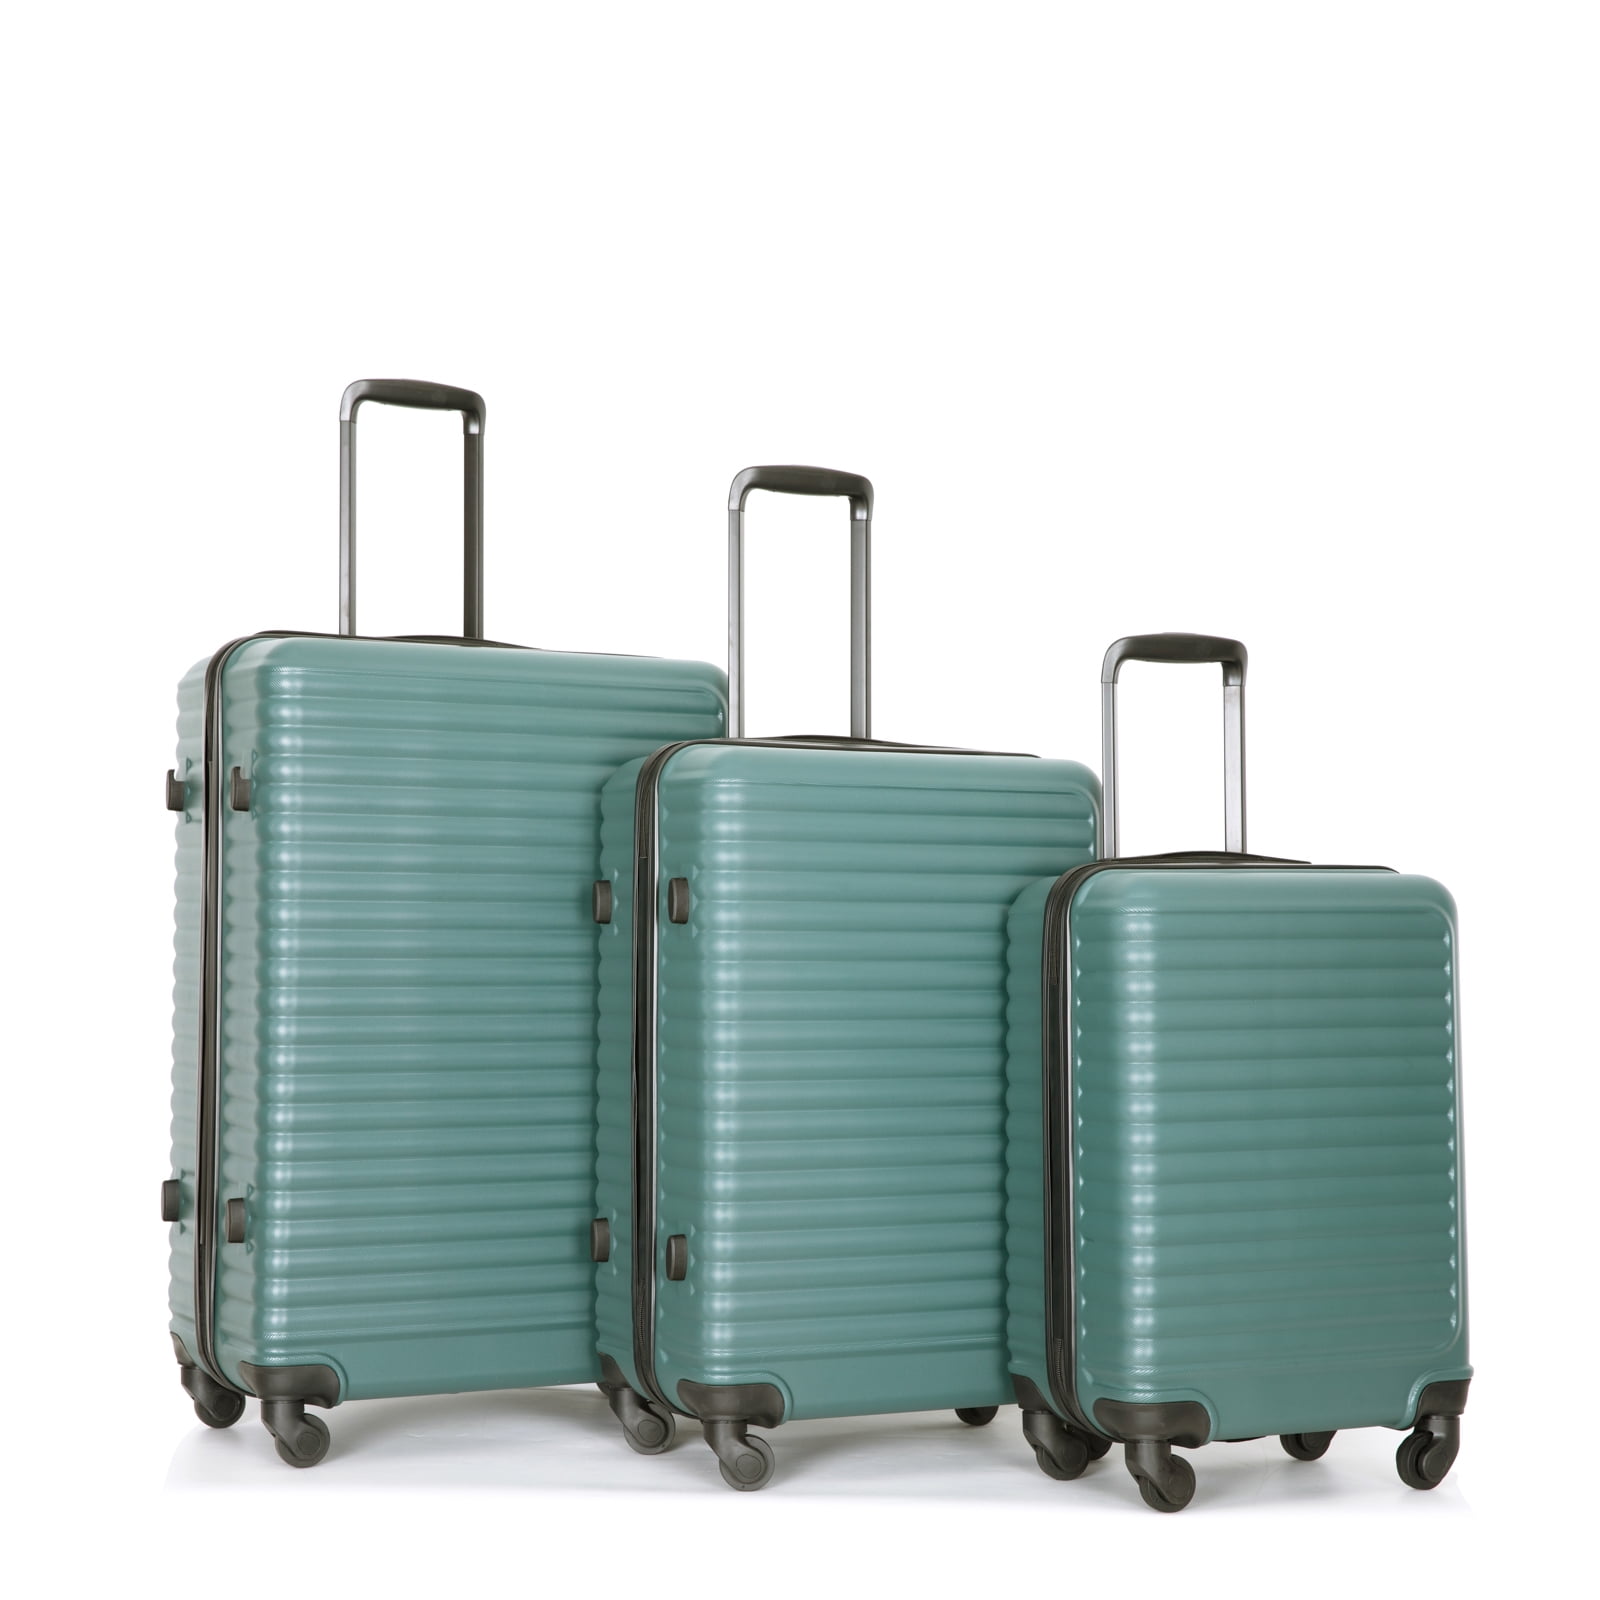 Travelhouse 3 Piece Luggage Set Hardshell Lightweight Suitcase with TSA ...